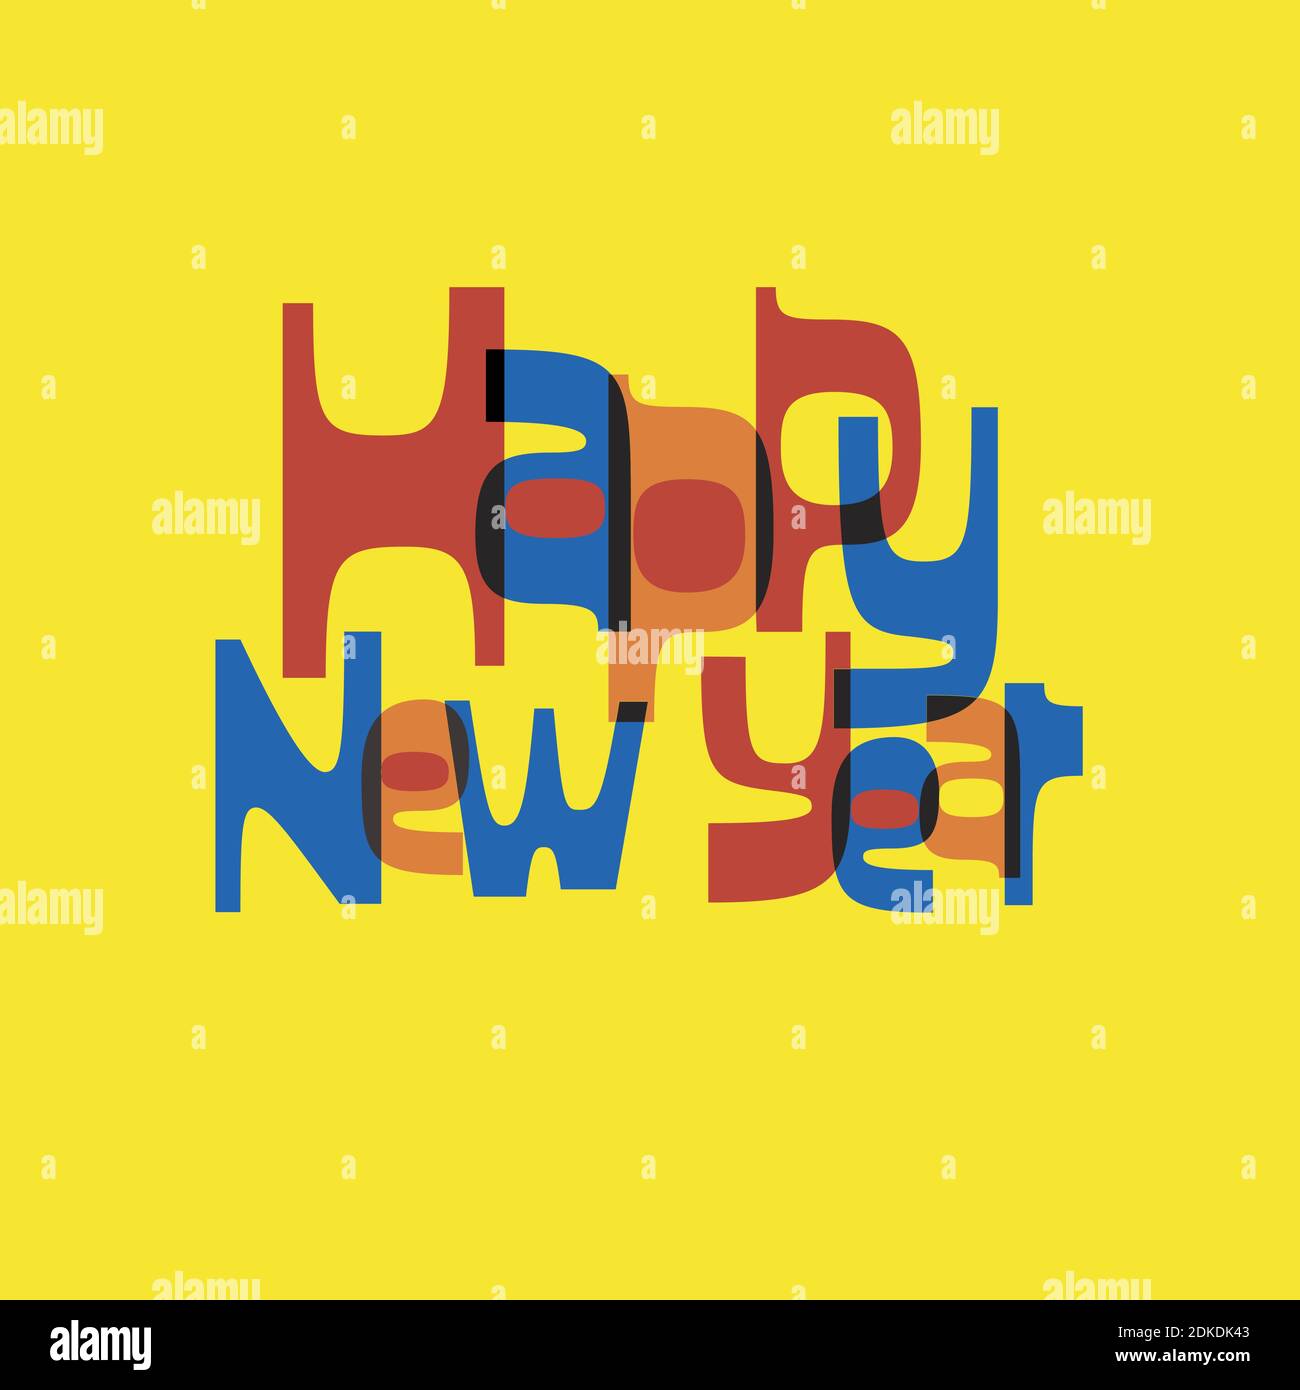 Carte sociale moderne, rétro et amusante Happy New Year du milieu du siècle, avec fond jaune vif et lettres rouges, orange et bleues. Illustration de Vecteur